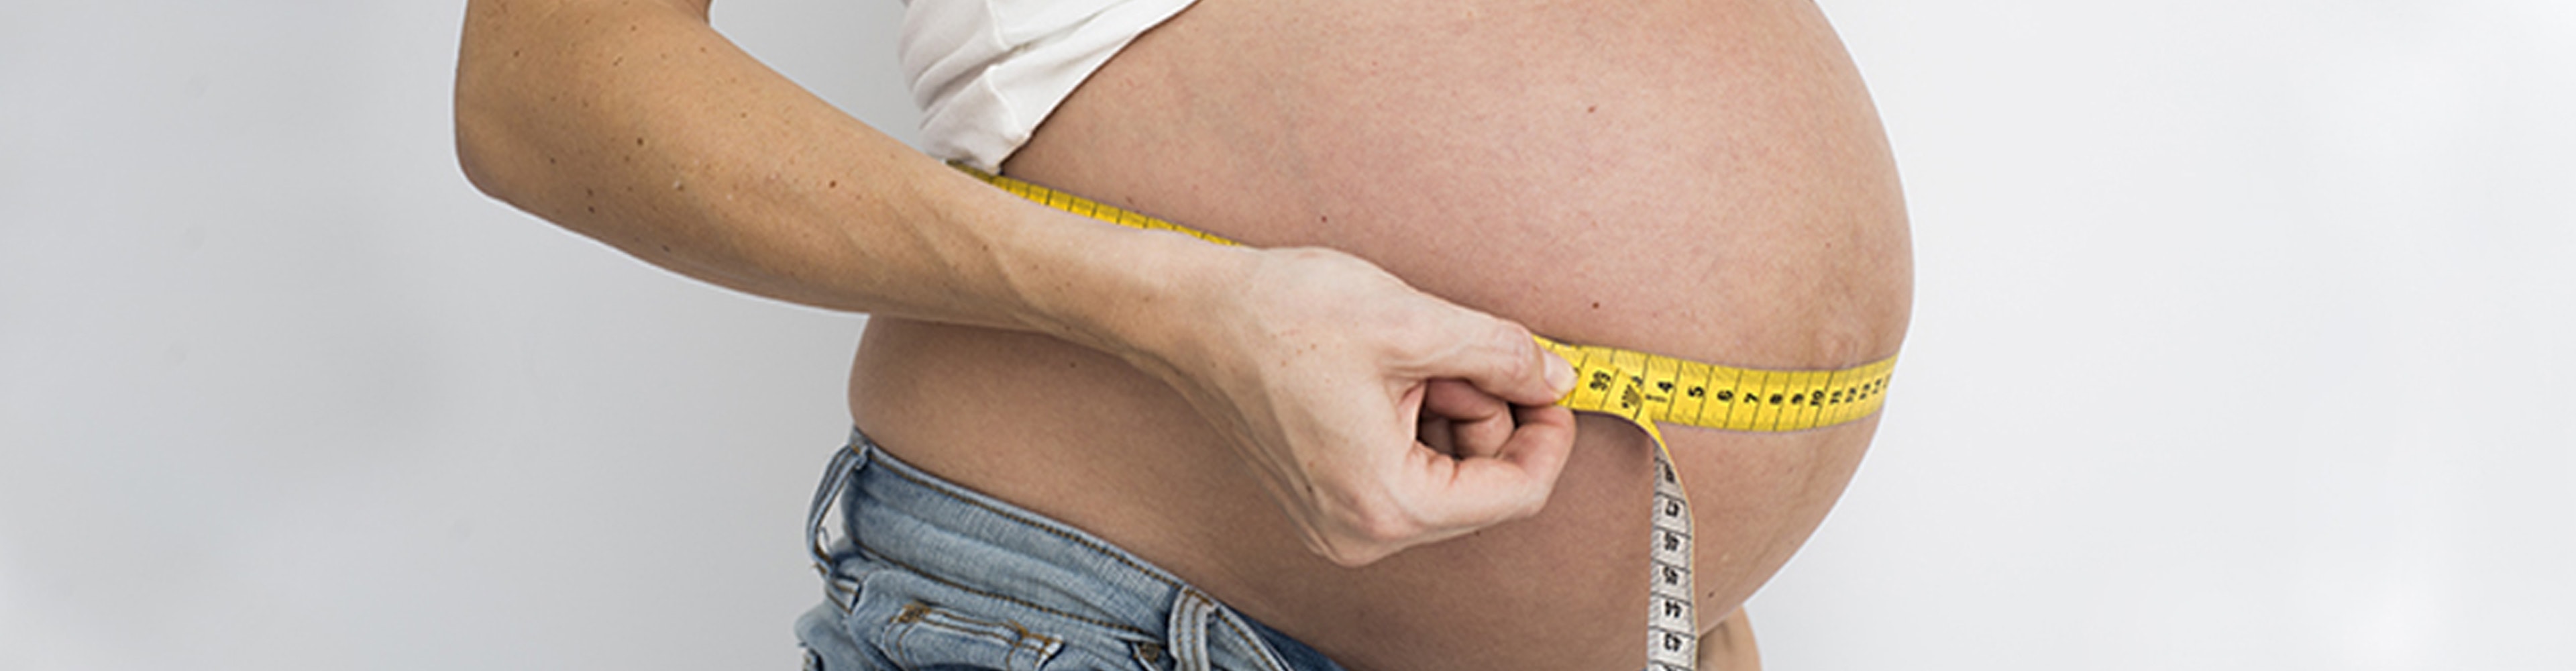 Prise de poids pendant la grossesse: un sujet sensible pour les femmes